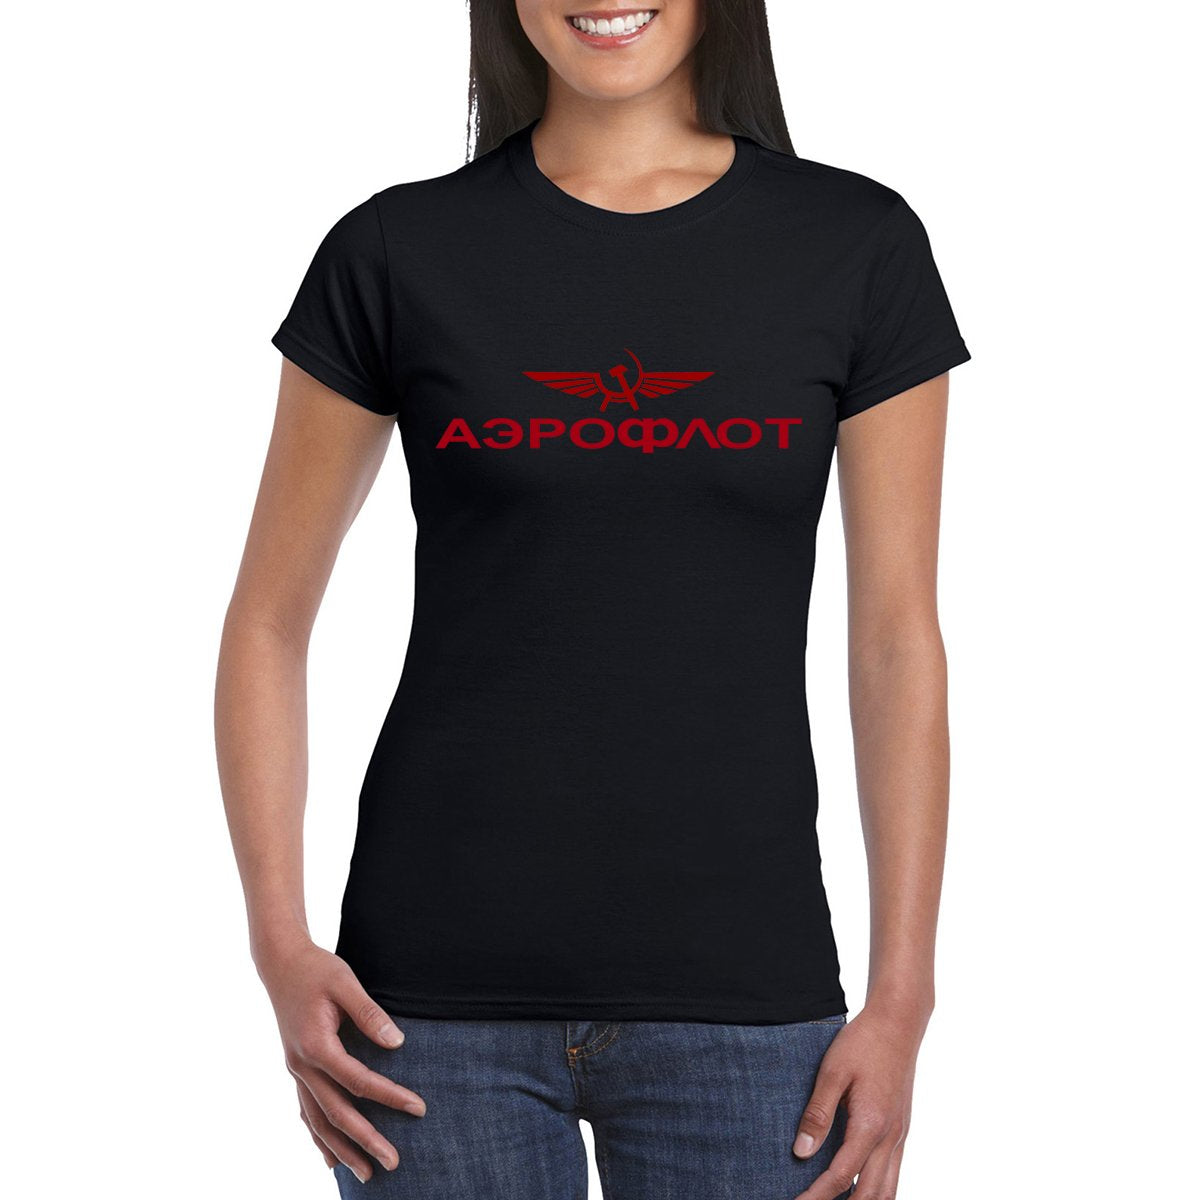 AEROFLOT T-Shirt Women's Semi Fitted.